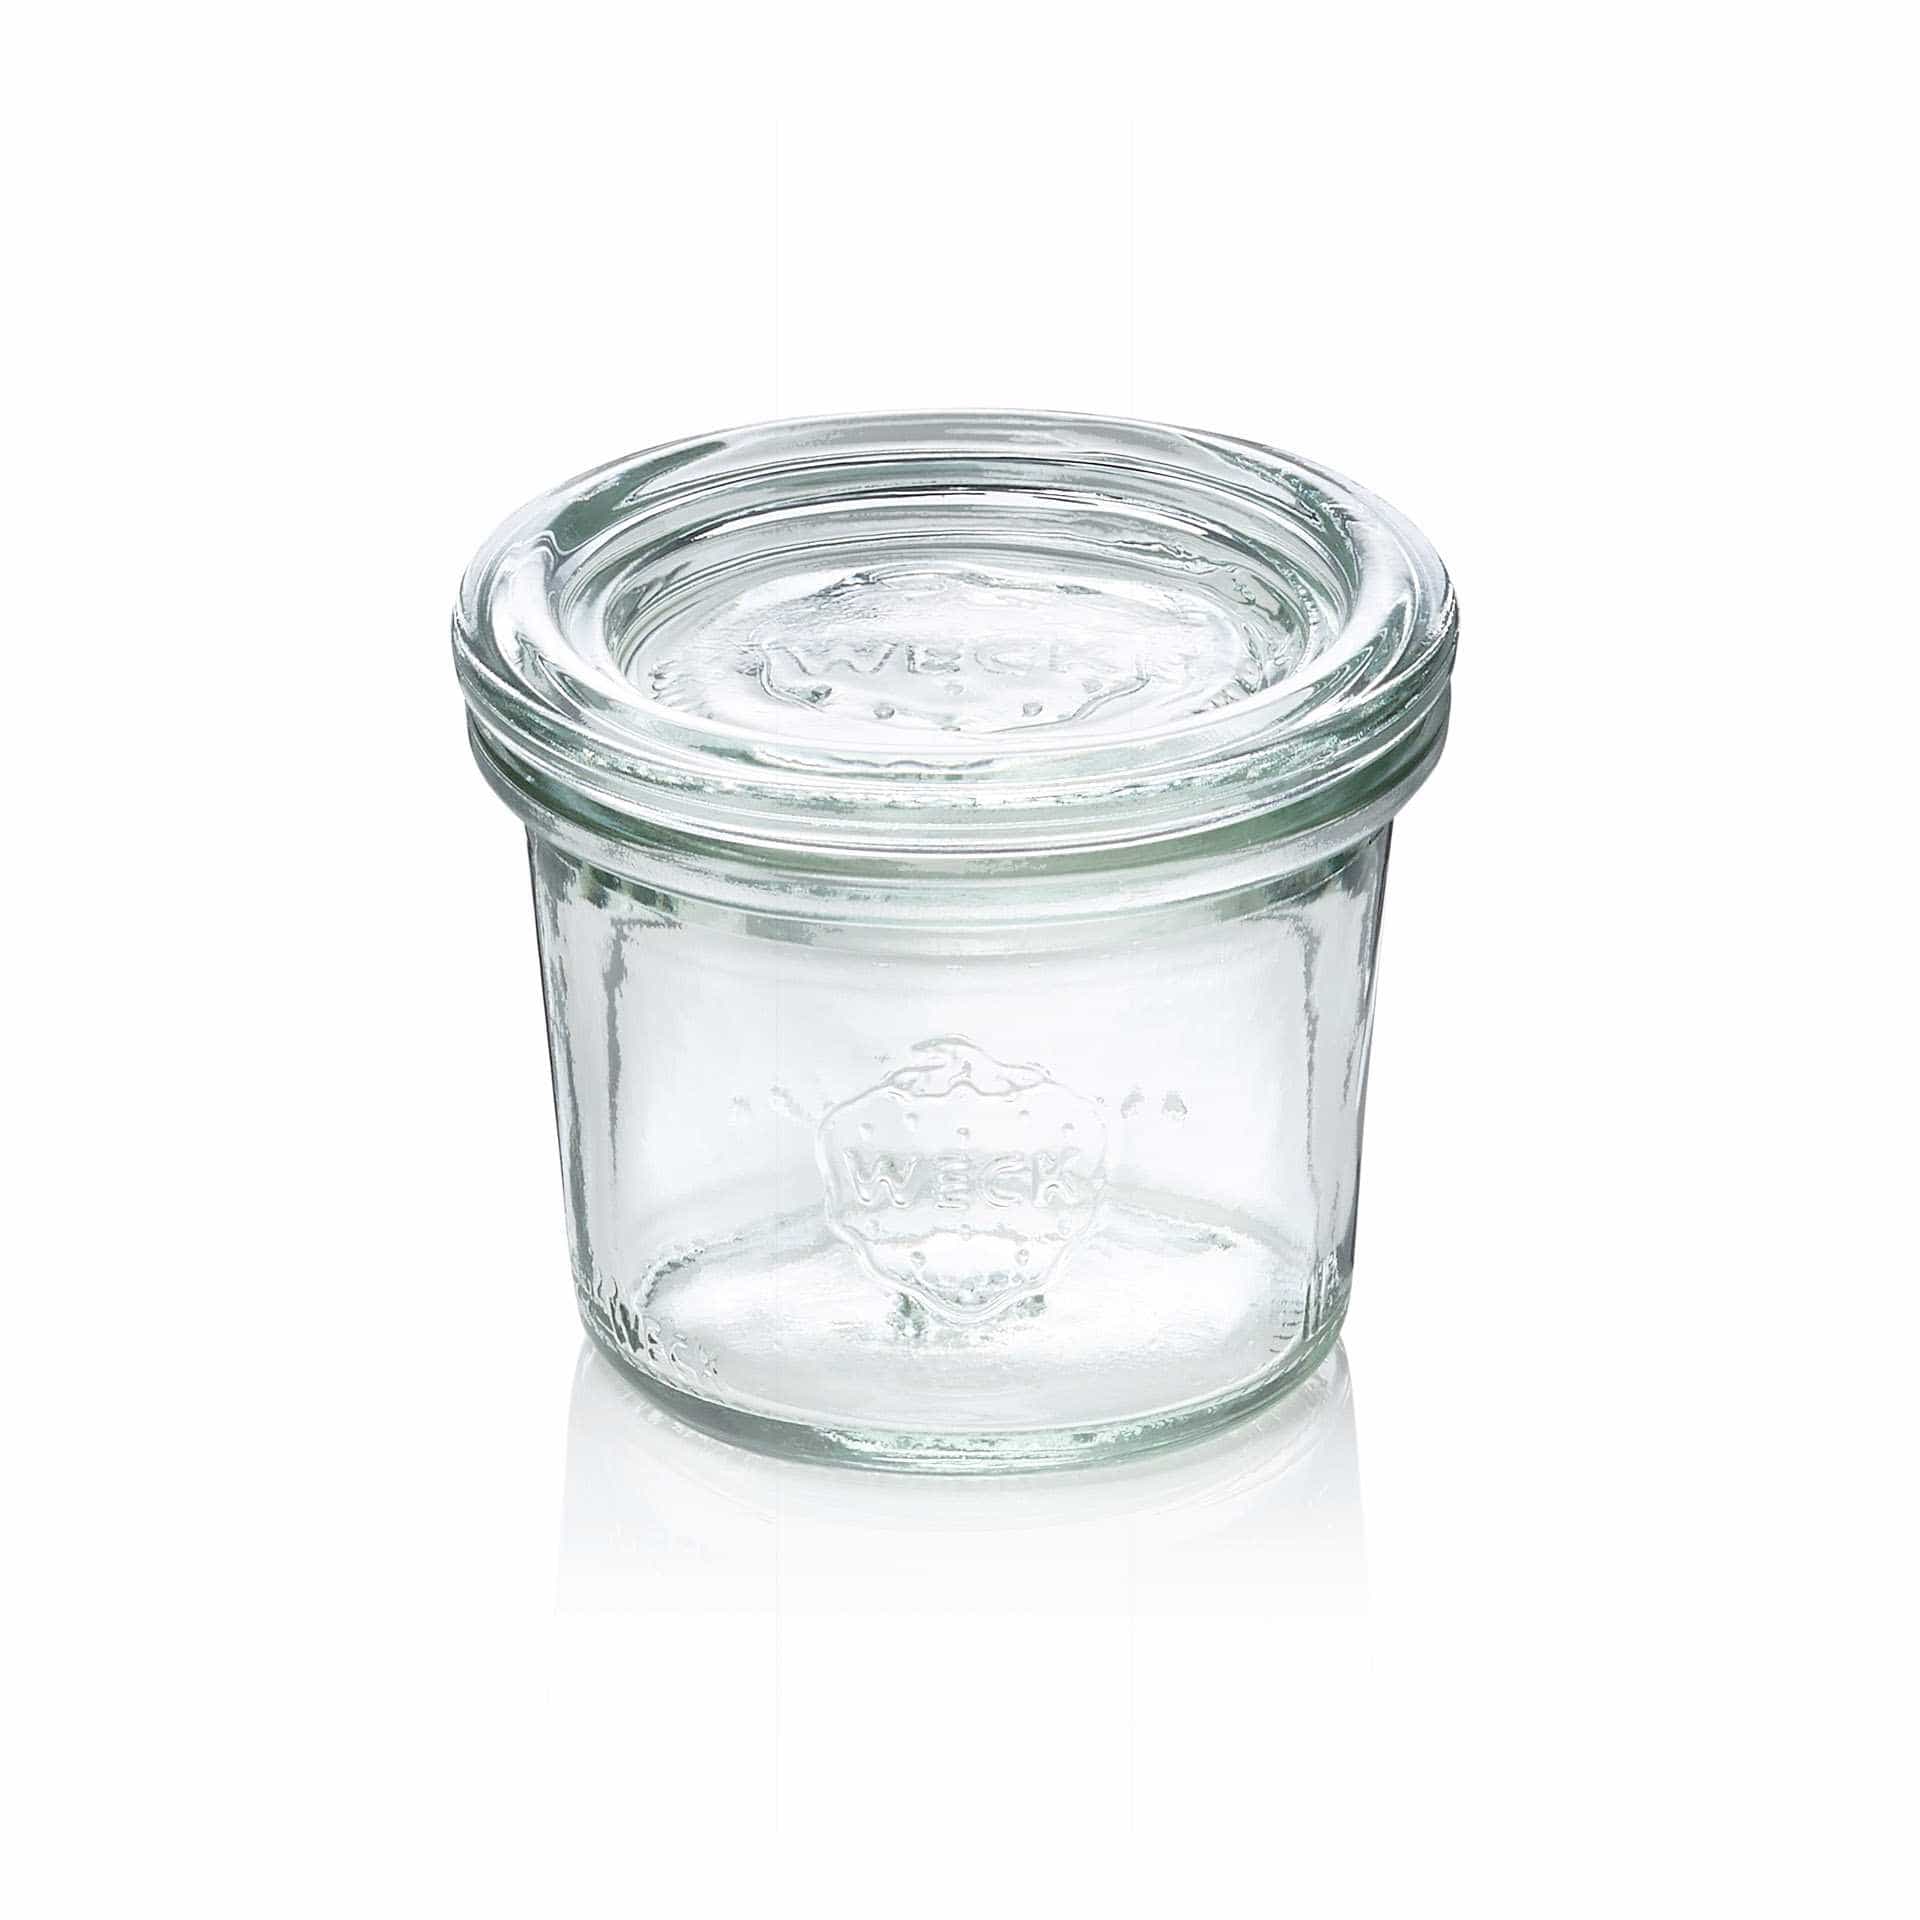 Sturzglas - Set á 12 Stück - Serie Overturn - Abm. 3,7 cm - Ø oben / unten 4,0 / 5,3 cm - Inhalt 0,035 l - Glas - 756-A